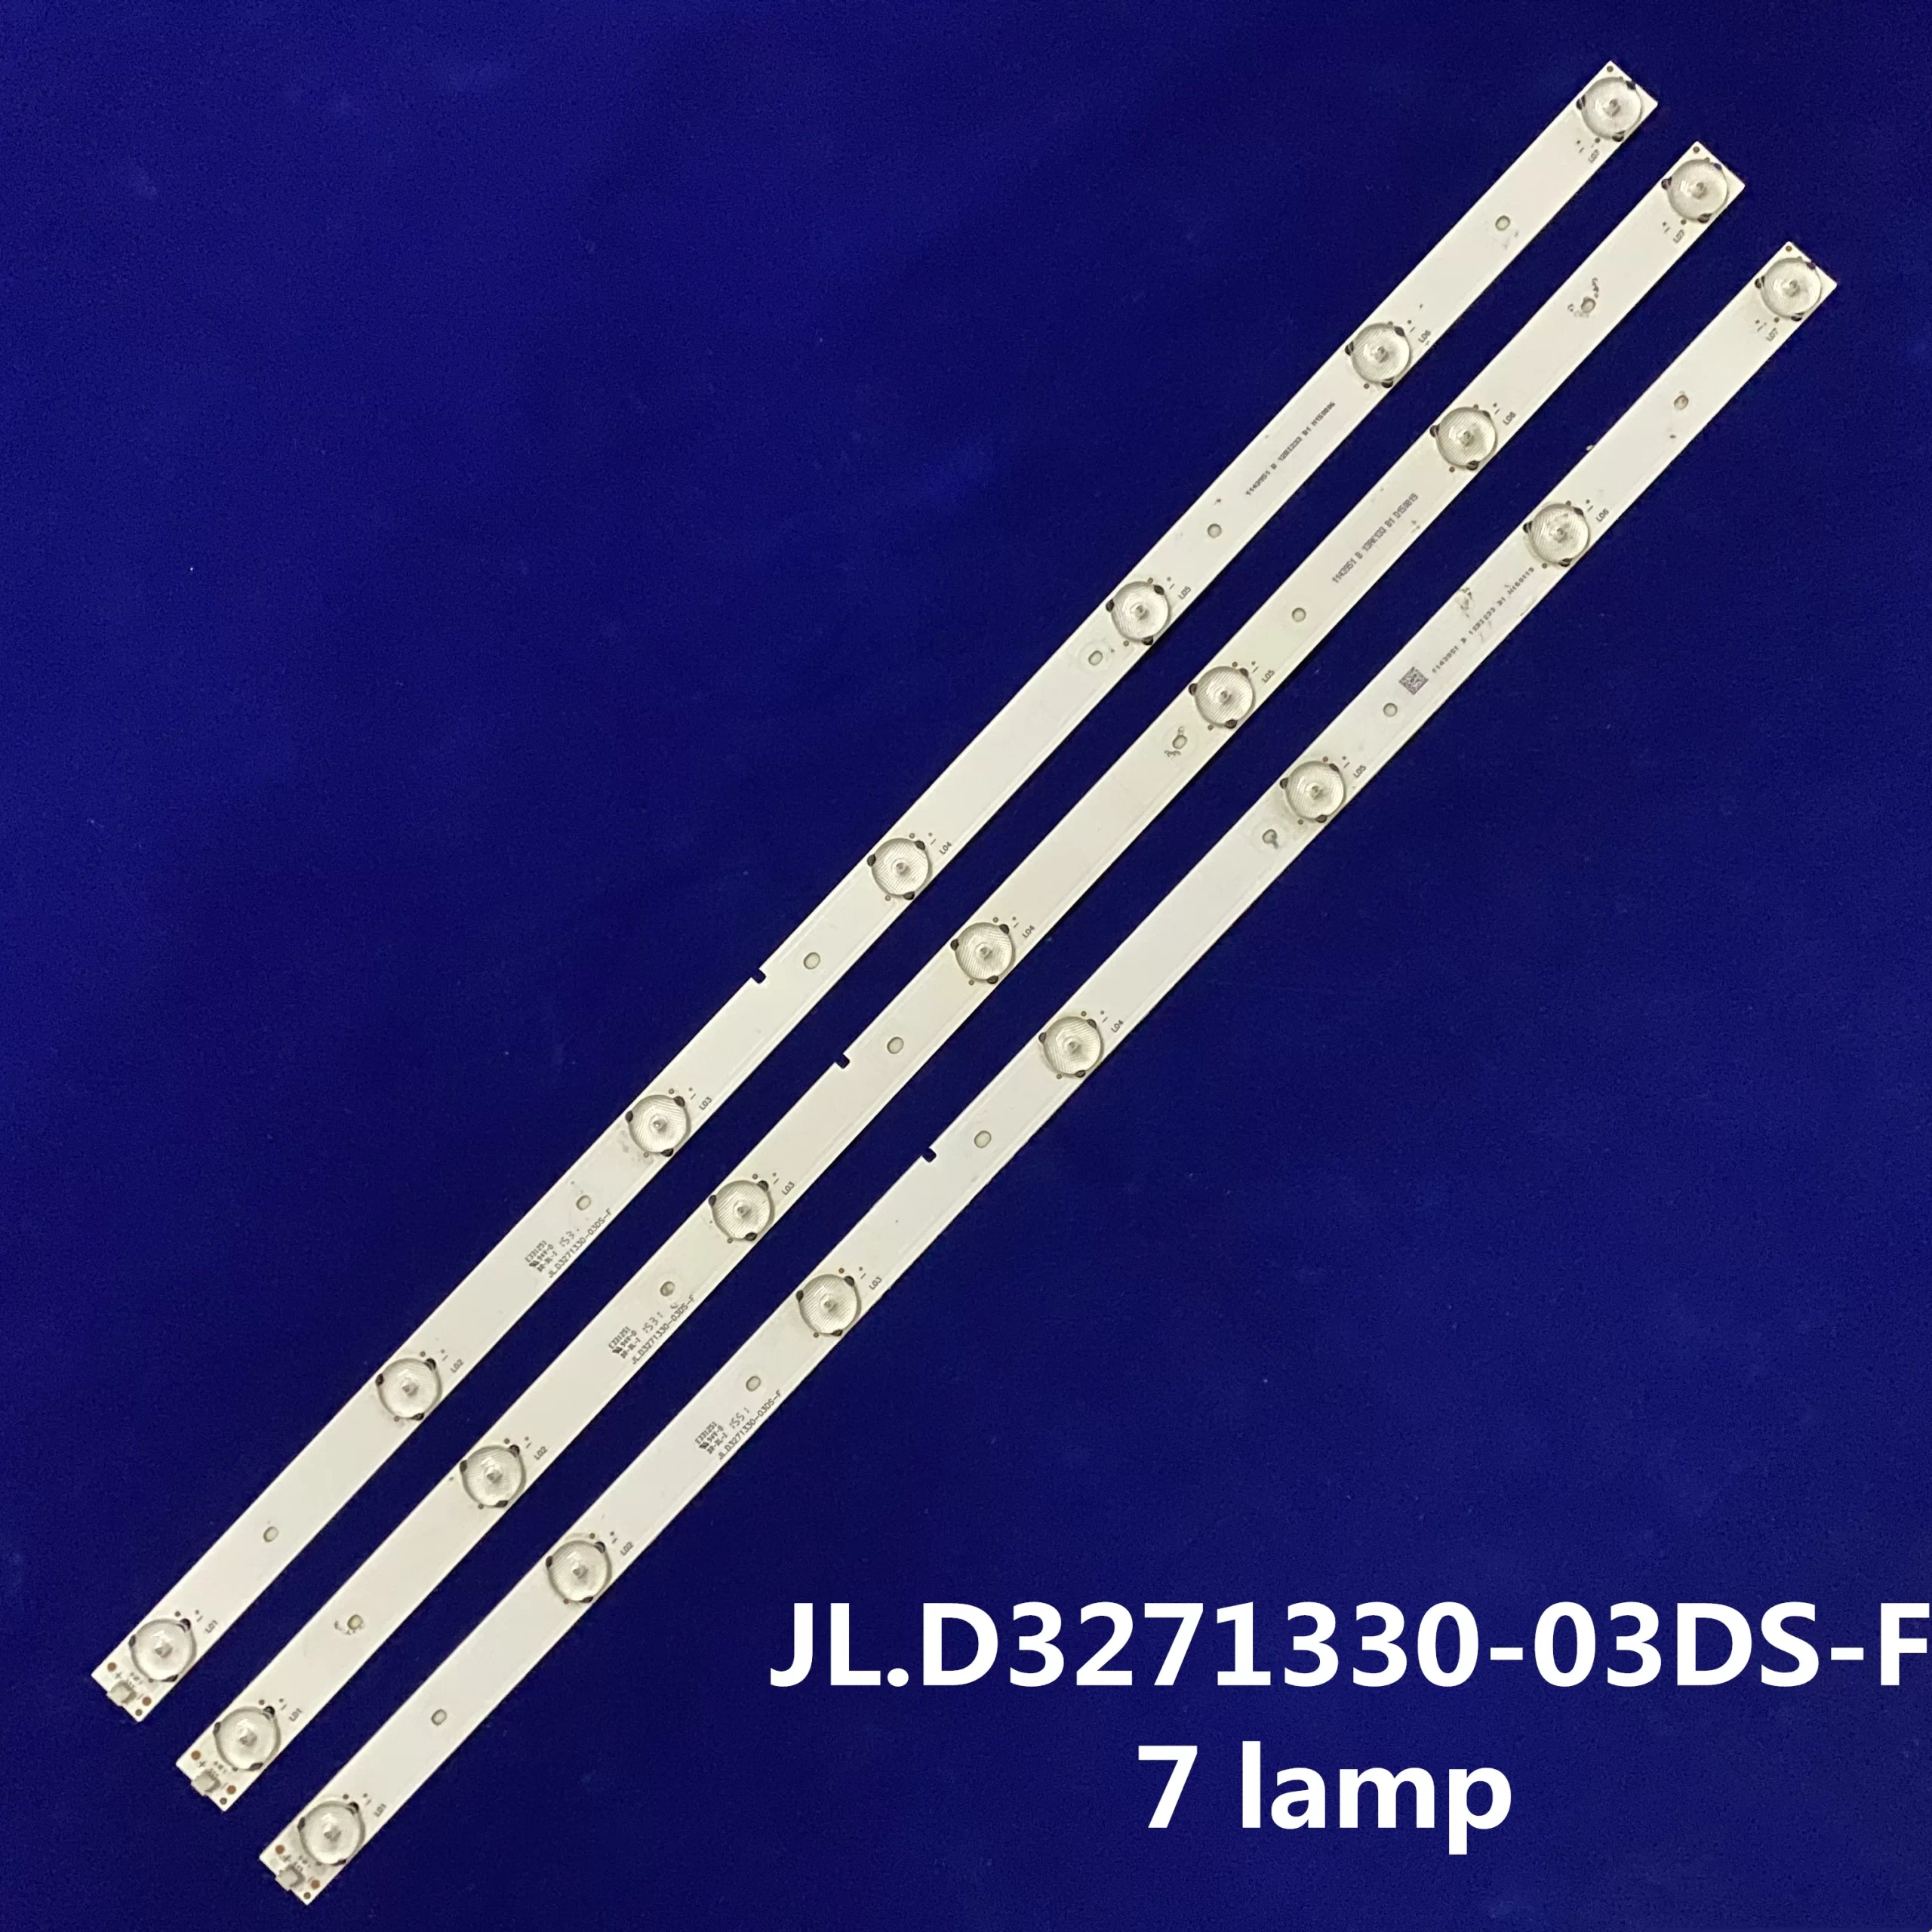 JL.D3271330-03DS-F